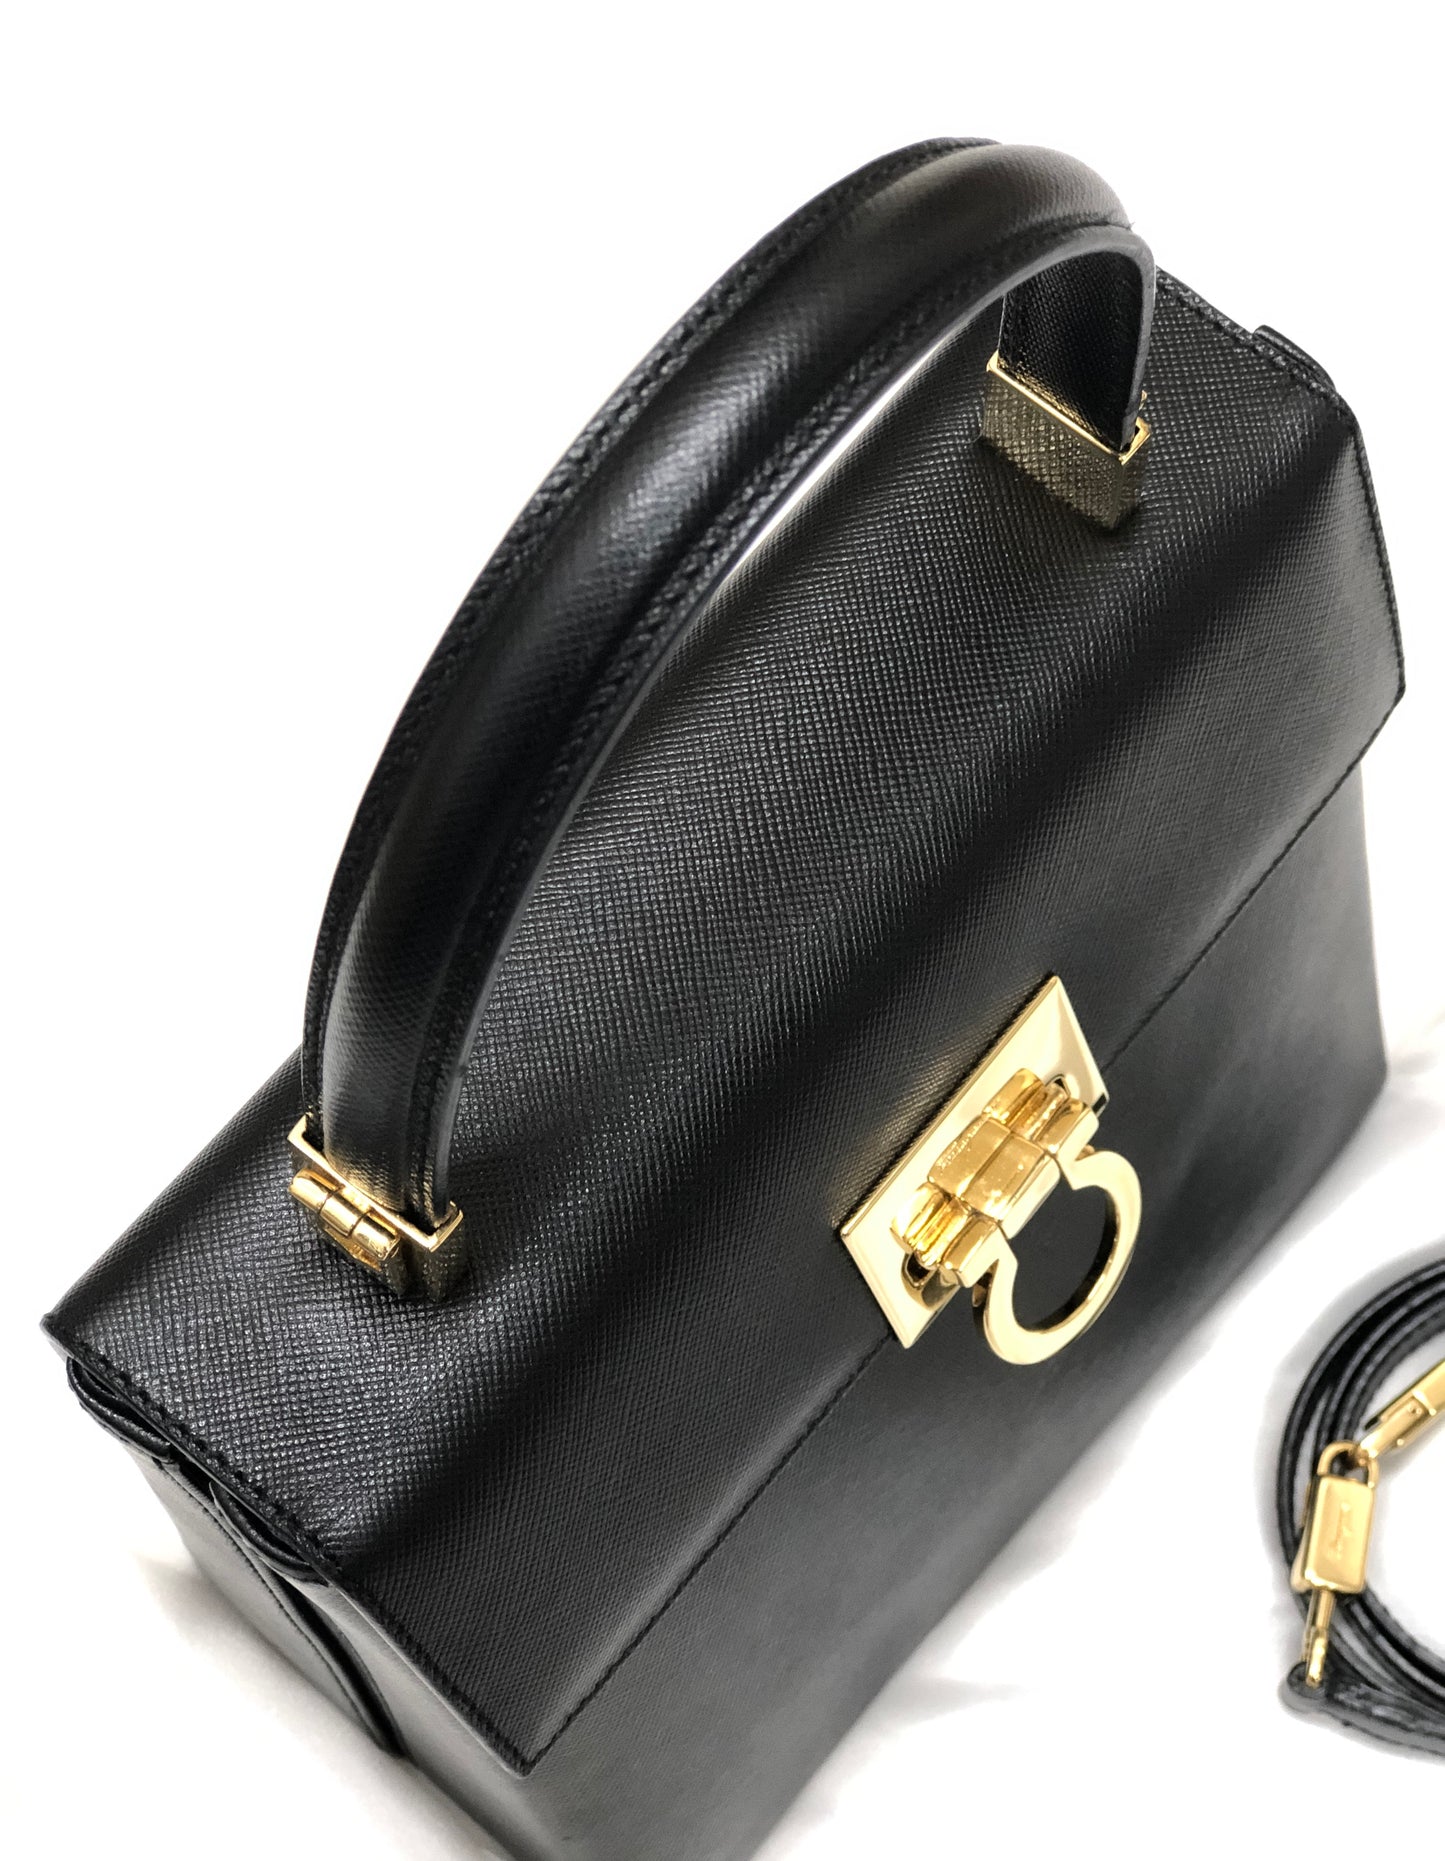 Salvatore Ferragamo Gancini Embossed leather 2way Shoulder bag Bandbag Black Vintage Old jbv5dw